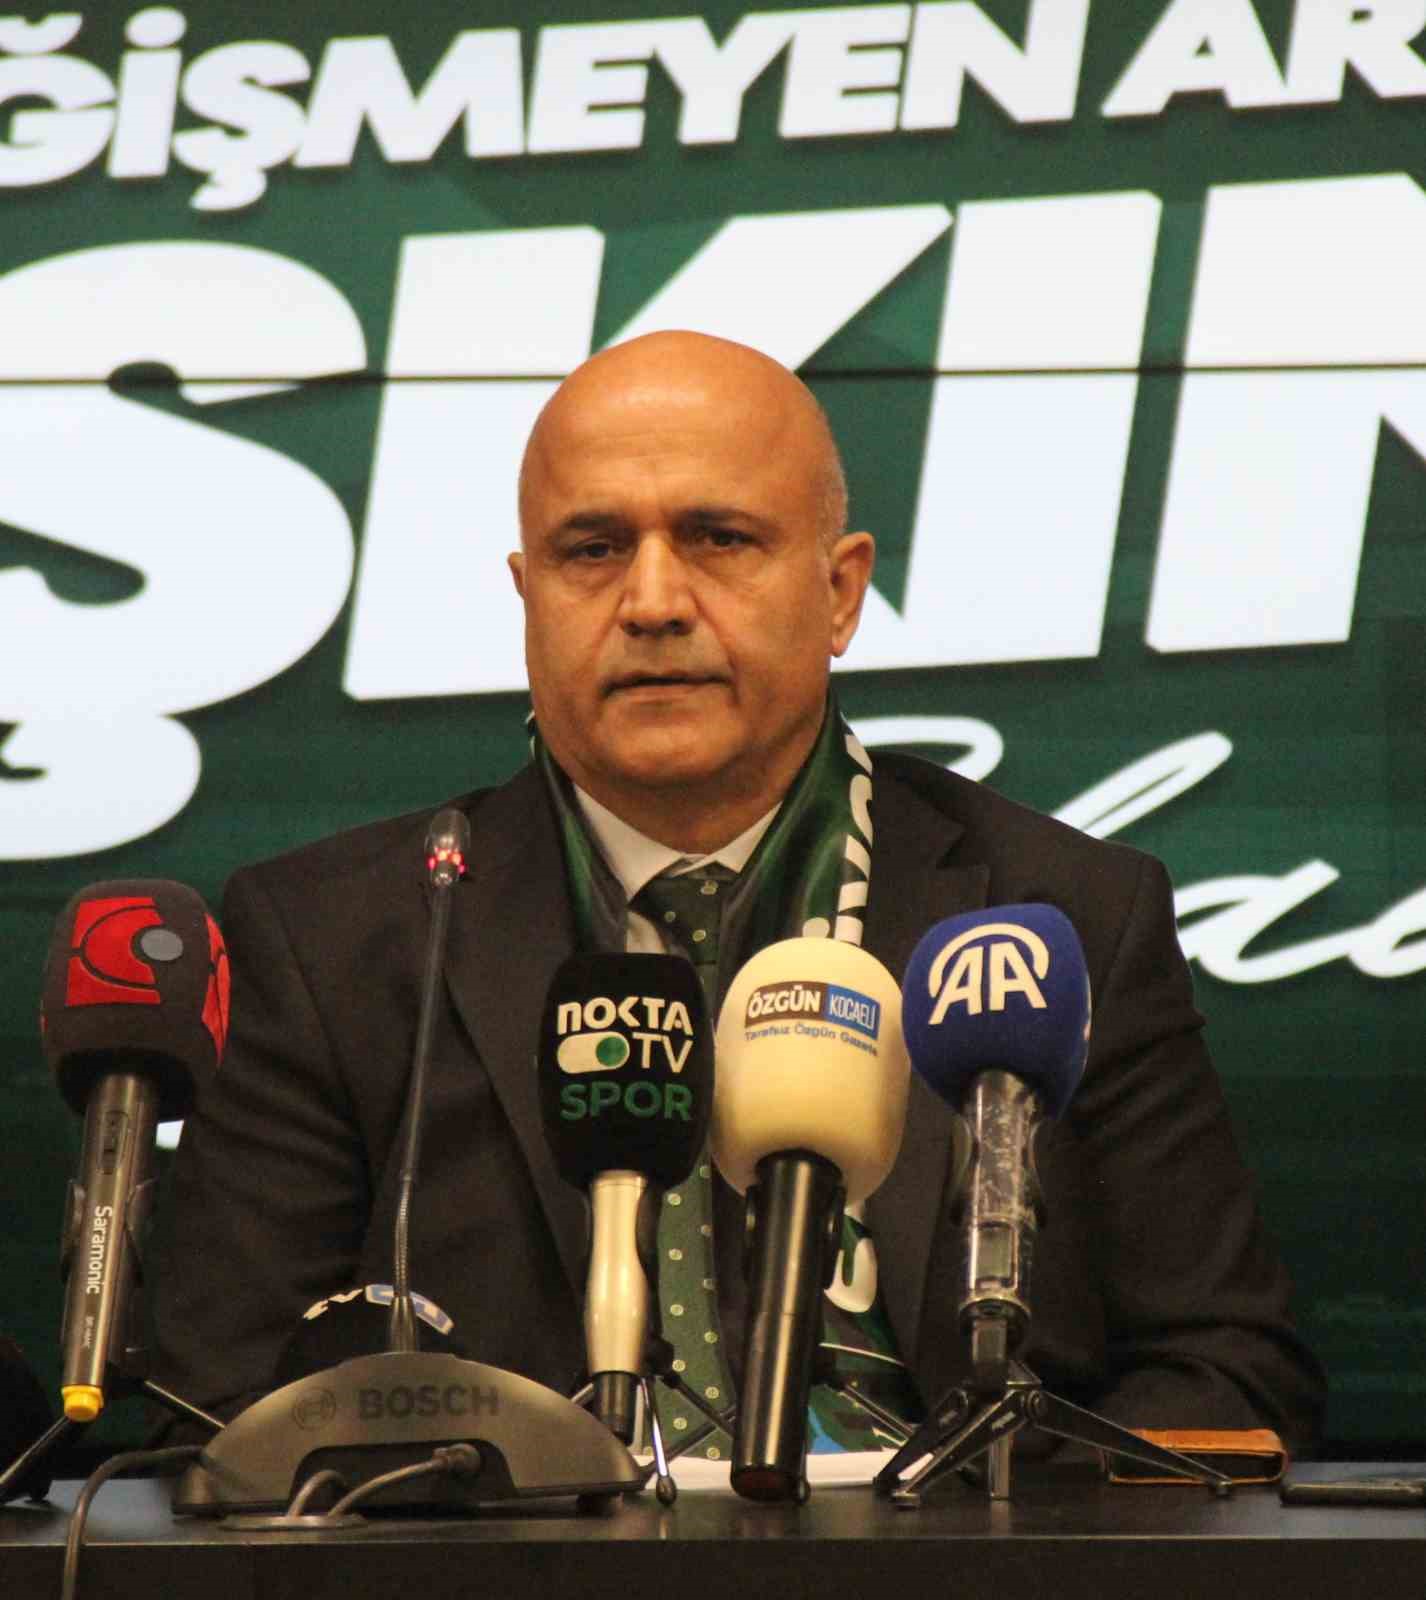 Kocaelispor Başkanı Durul: "Göztepe maçı, bizim için bir dönüm noktası olacaktır"
